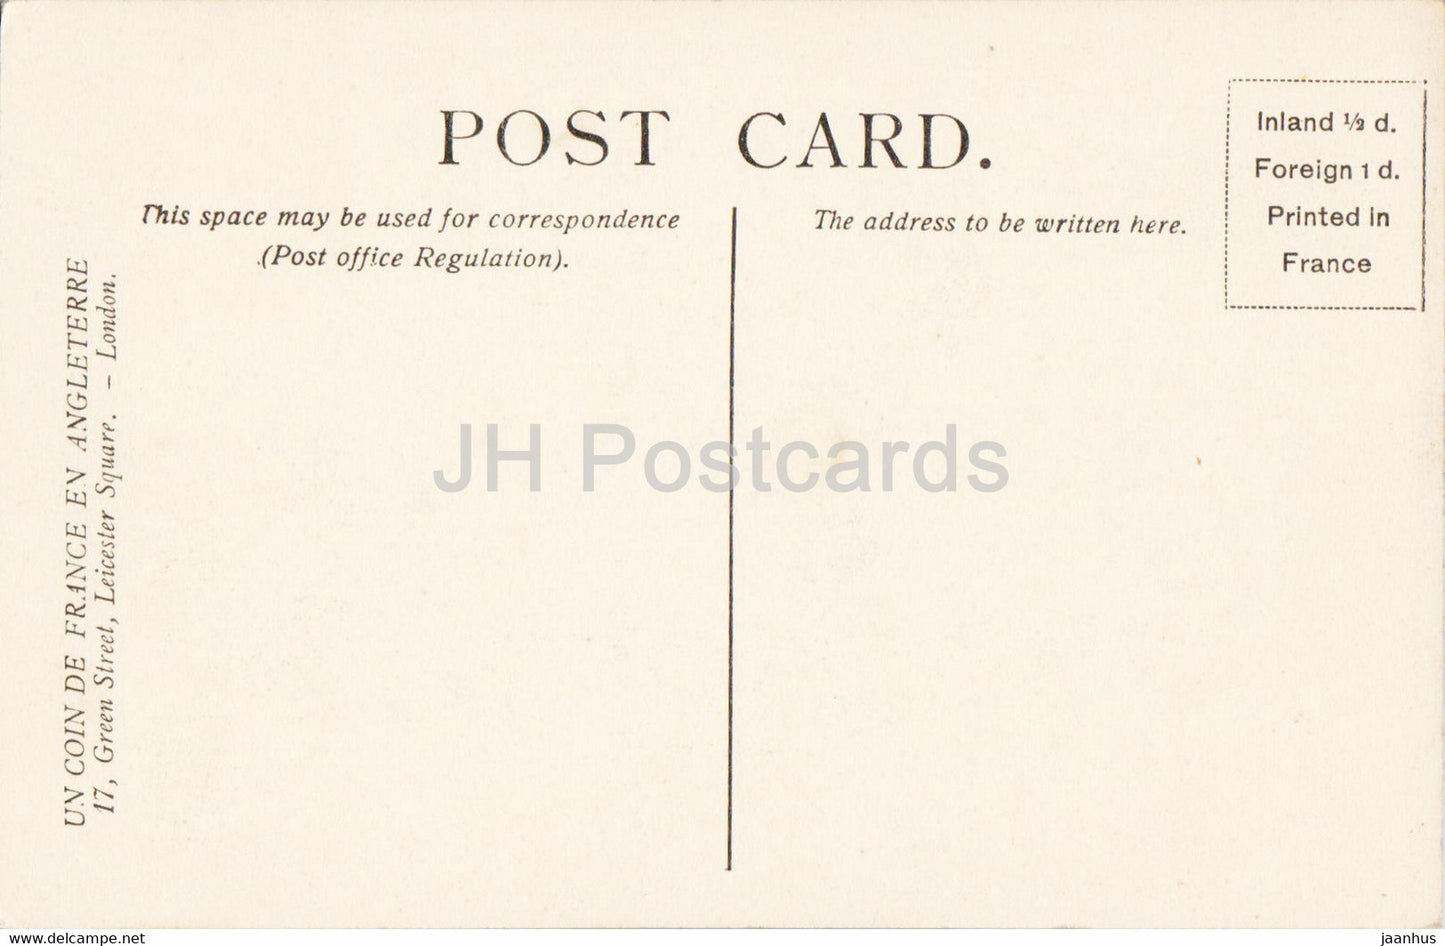 London – The Natural History Museum – 153 – alte Postkarte – England – Vereinigtes Königreich – unbenutzt